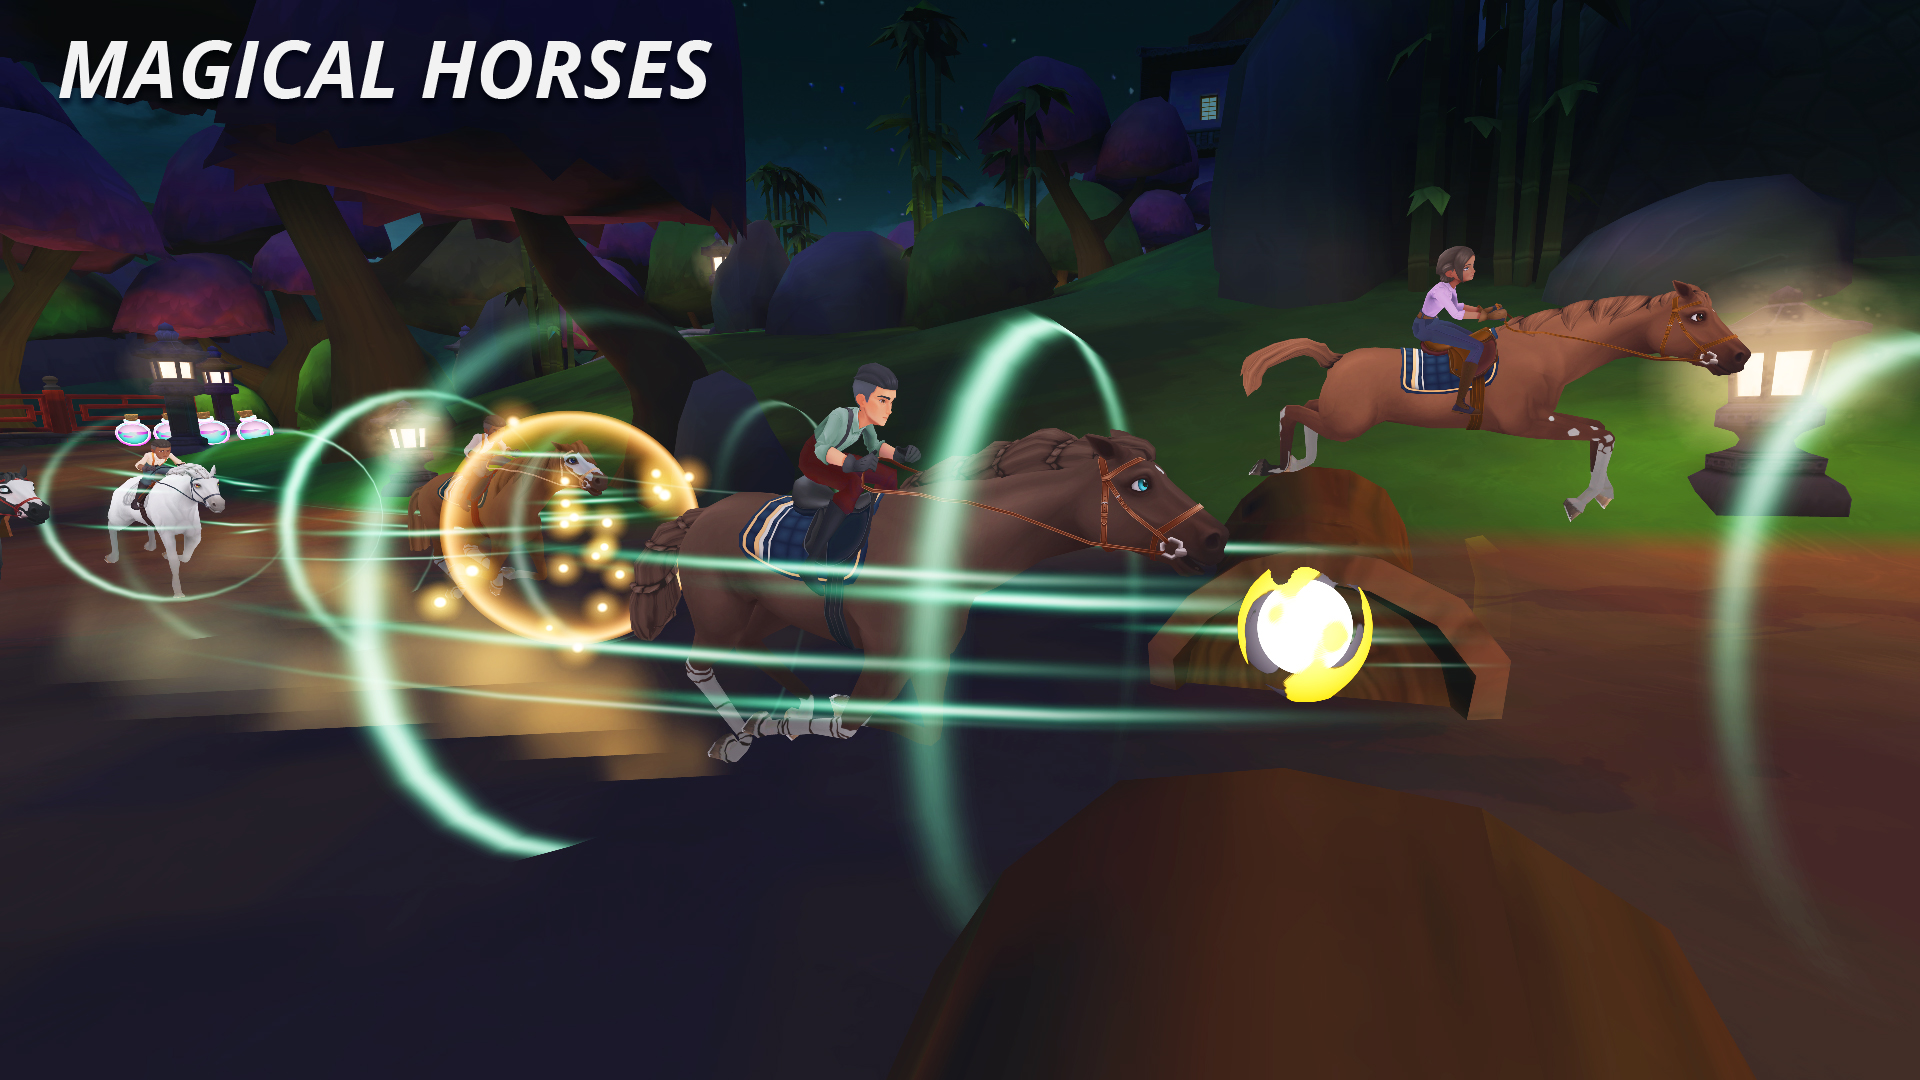 Baixe e jogue Wildshade: Fantasy Horse Races no PC e Mac (emulador)